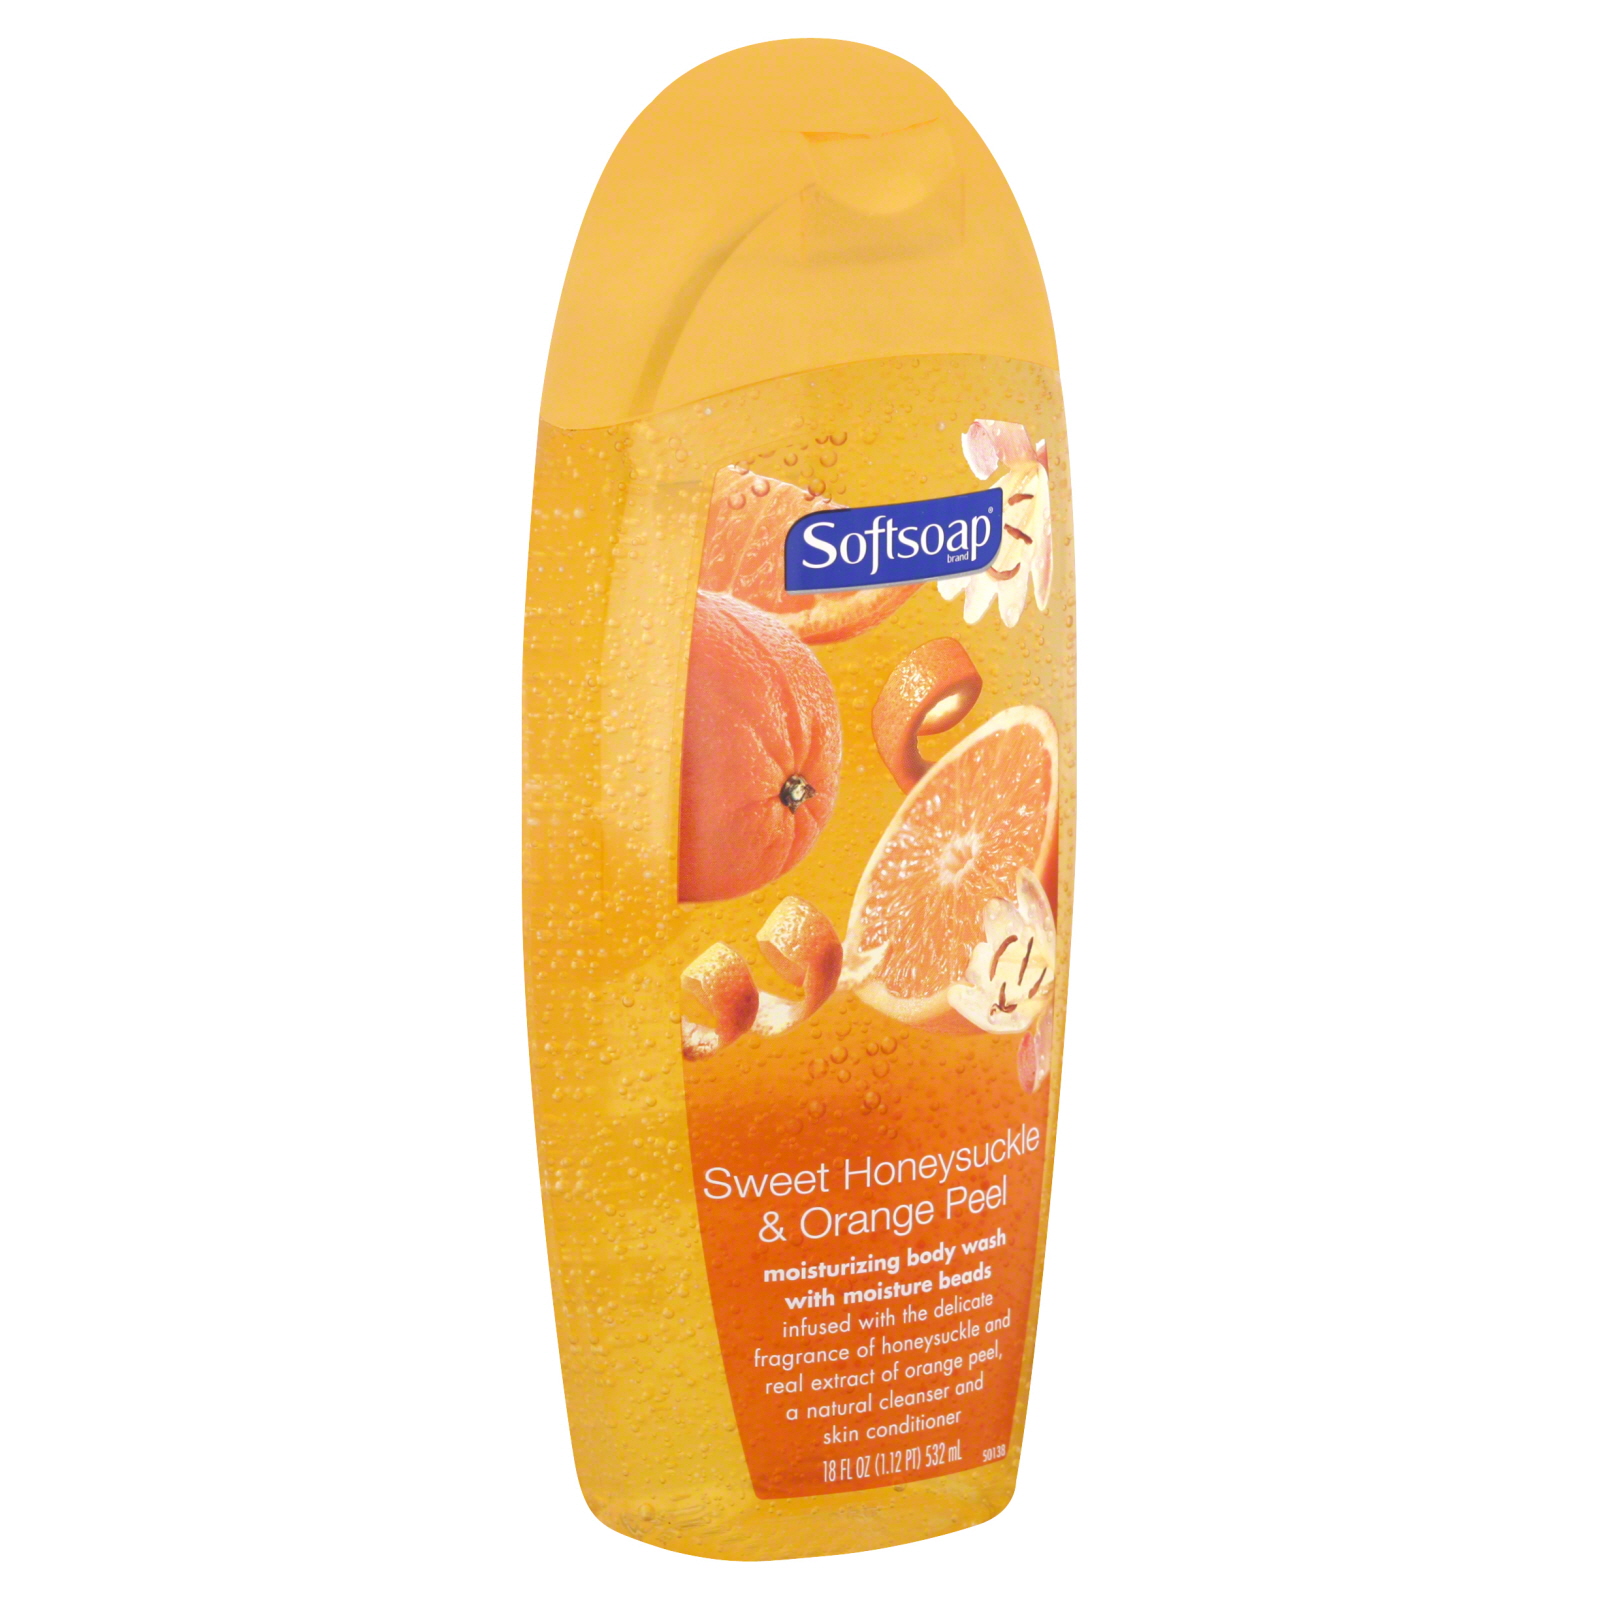 Softsoap Body Wash, Moisturizing, Sweet Honeysuckle & Orange Peel, 18 fl oz